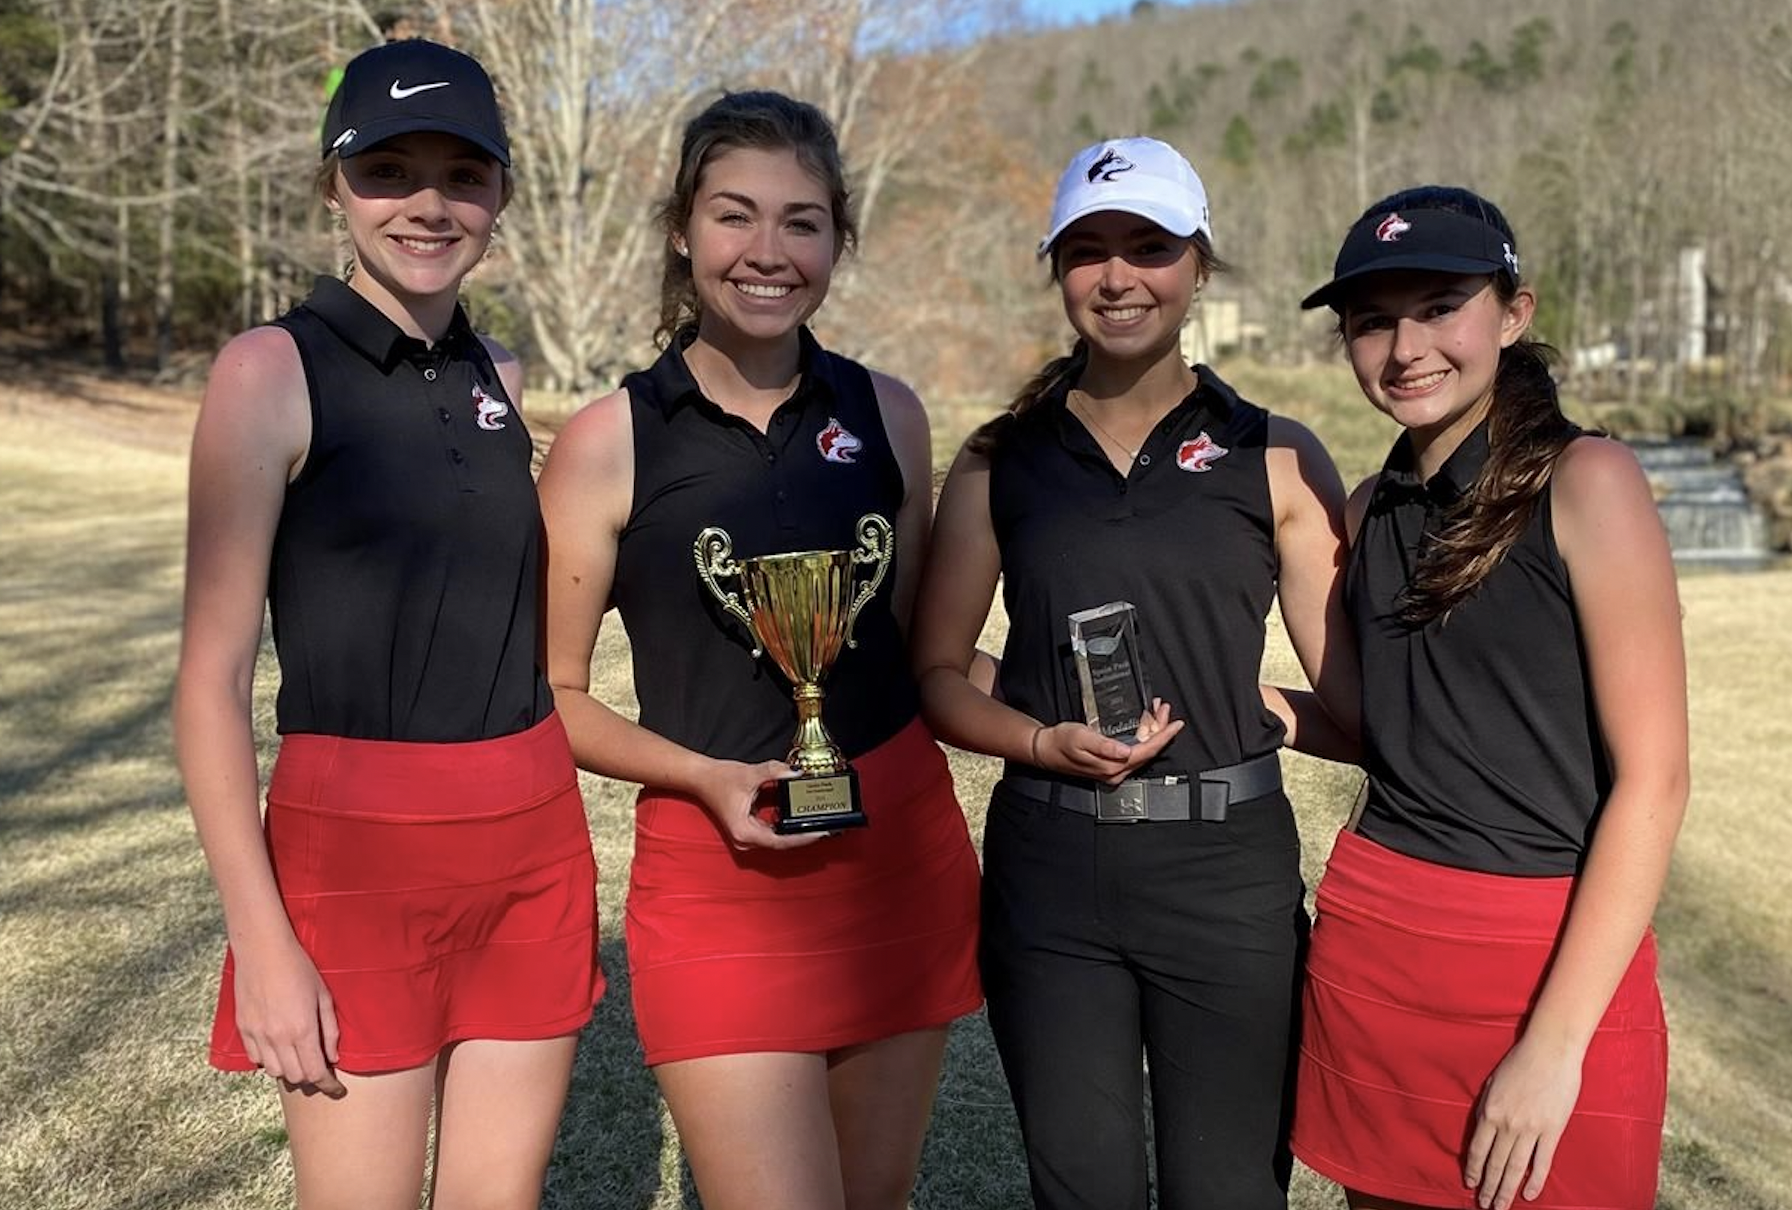 Hewitt-Trussville girls golf wins Hike the Hills tourney